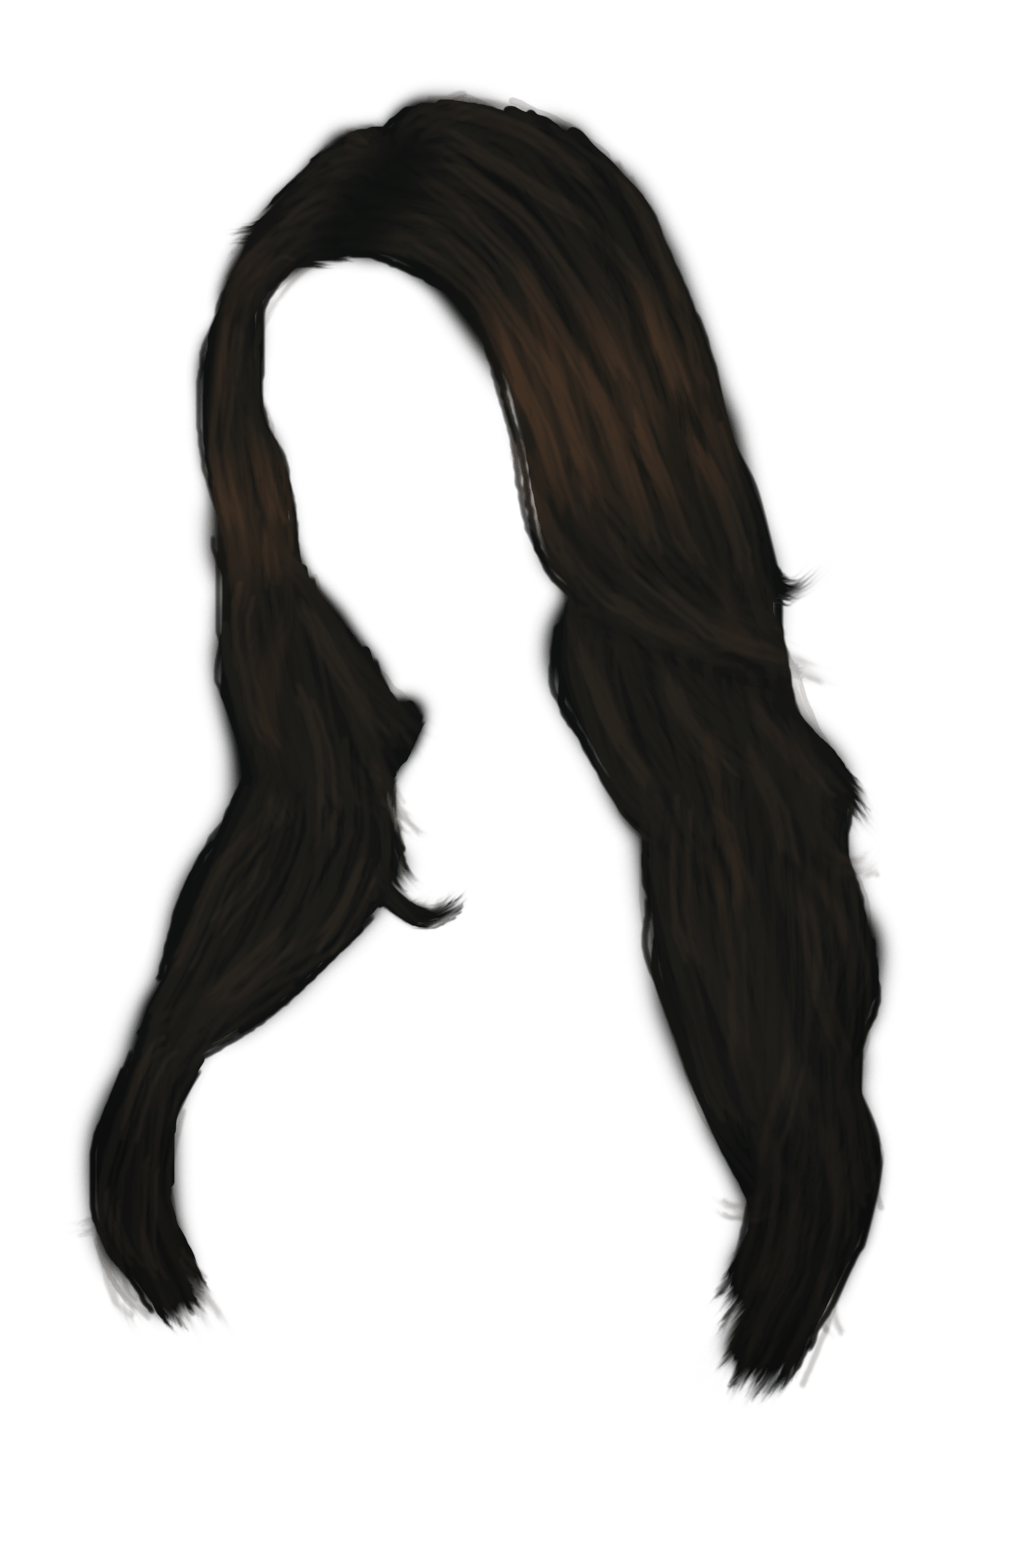 Immagine Trasparente dei capelli della donna